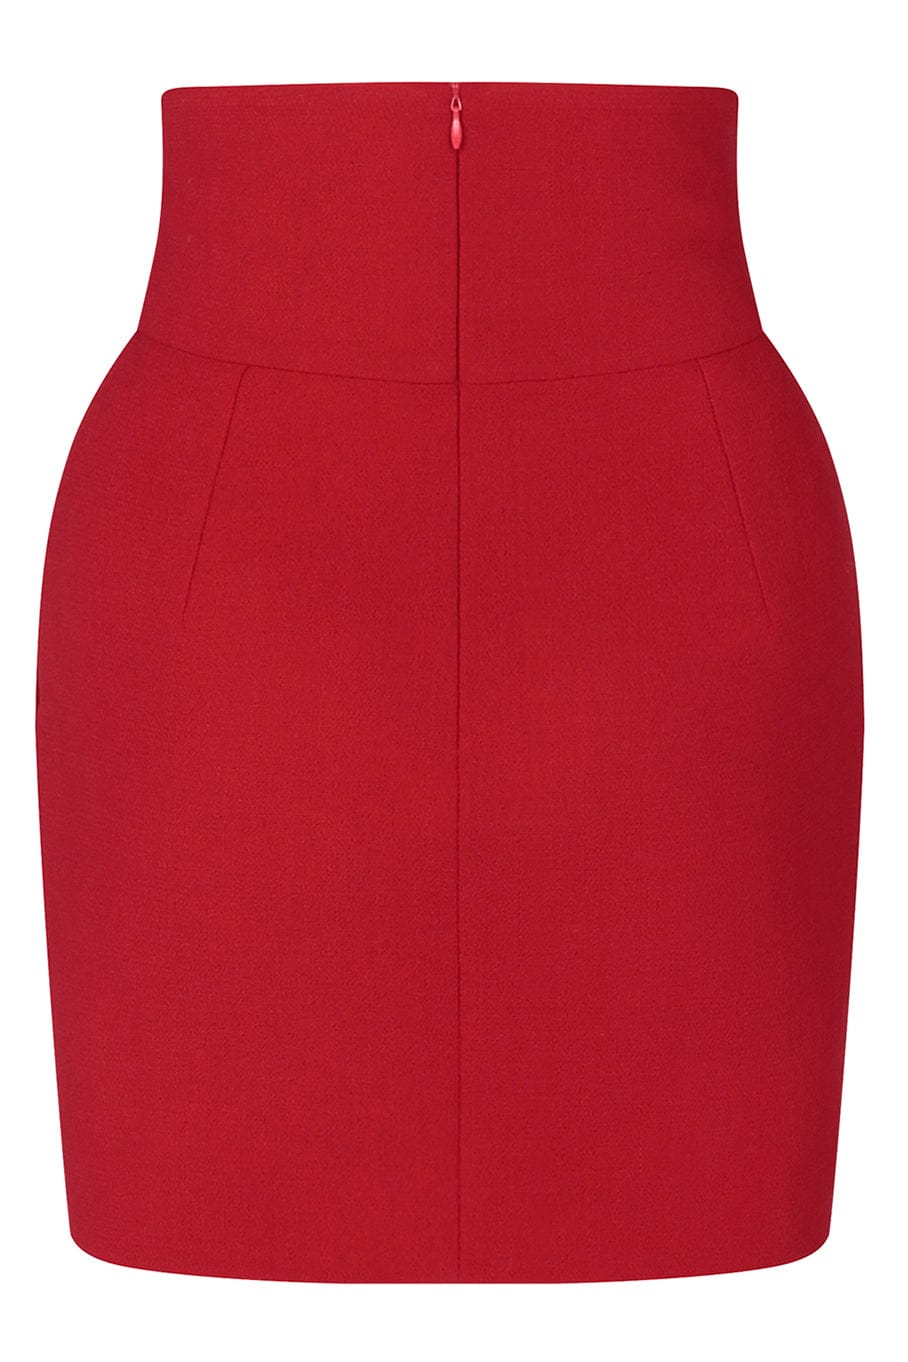 ALEXANDRE VAUTHIER-Wool Mini Skirt-RED